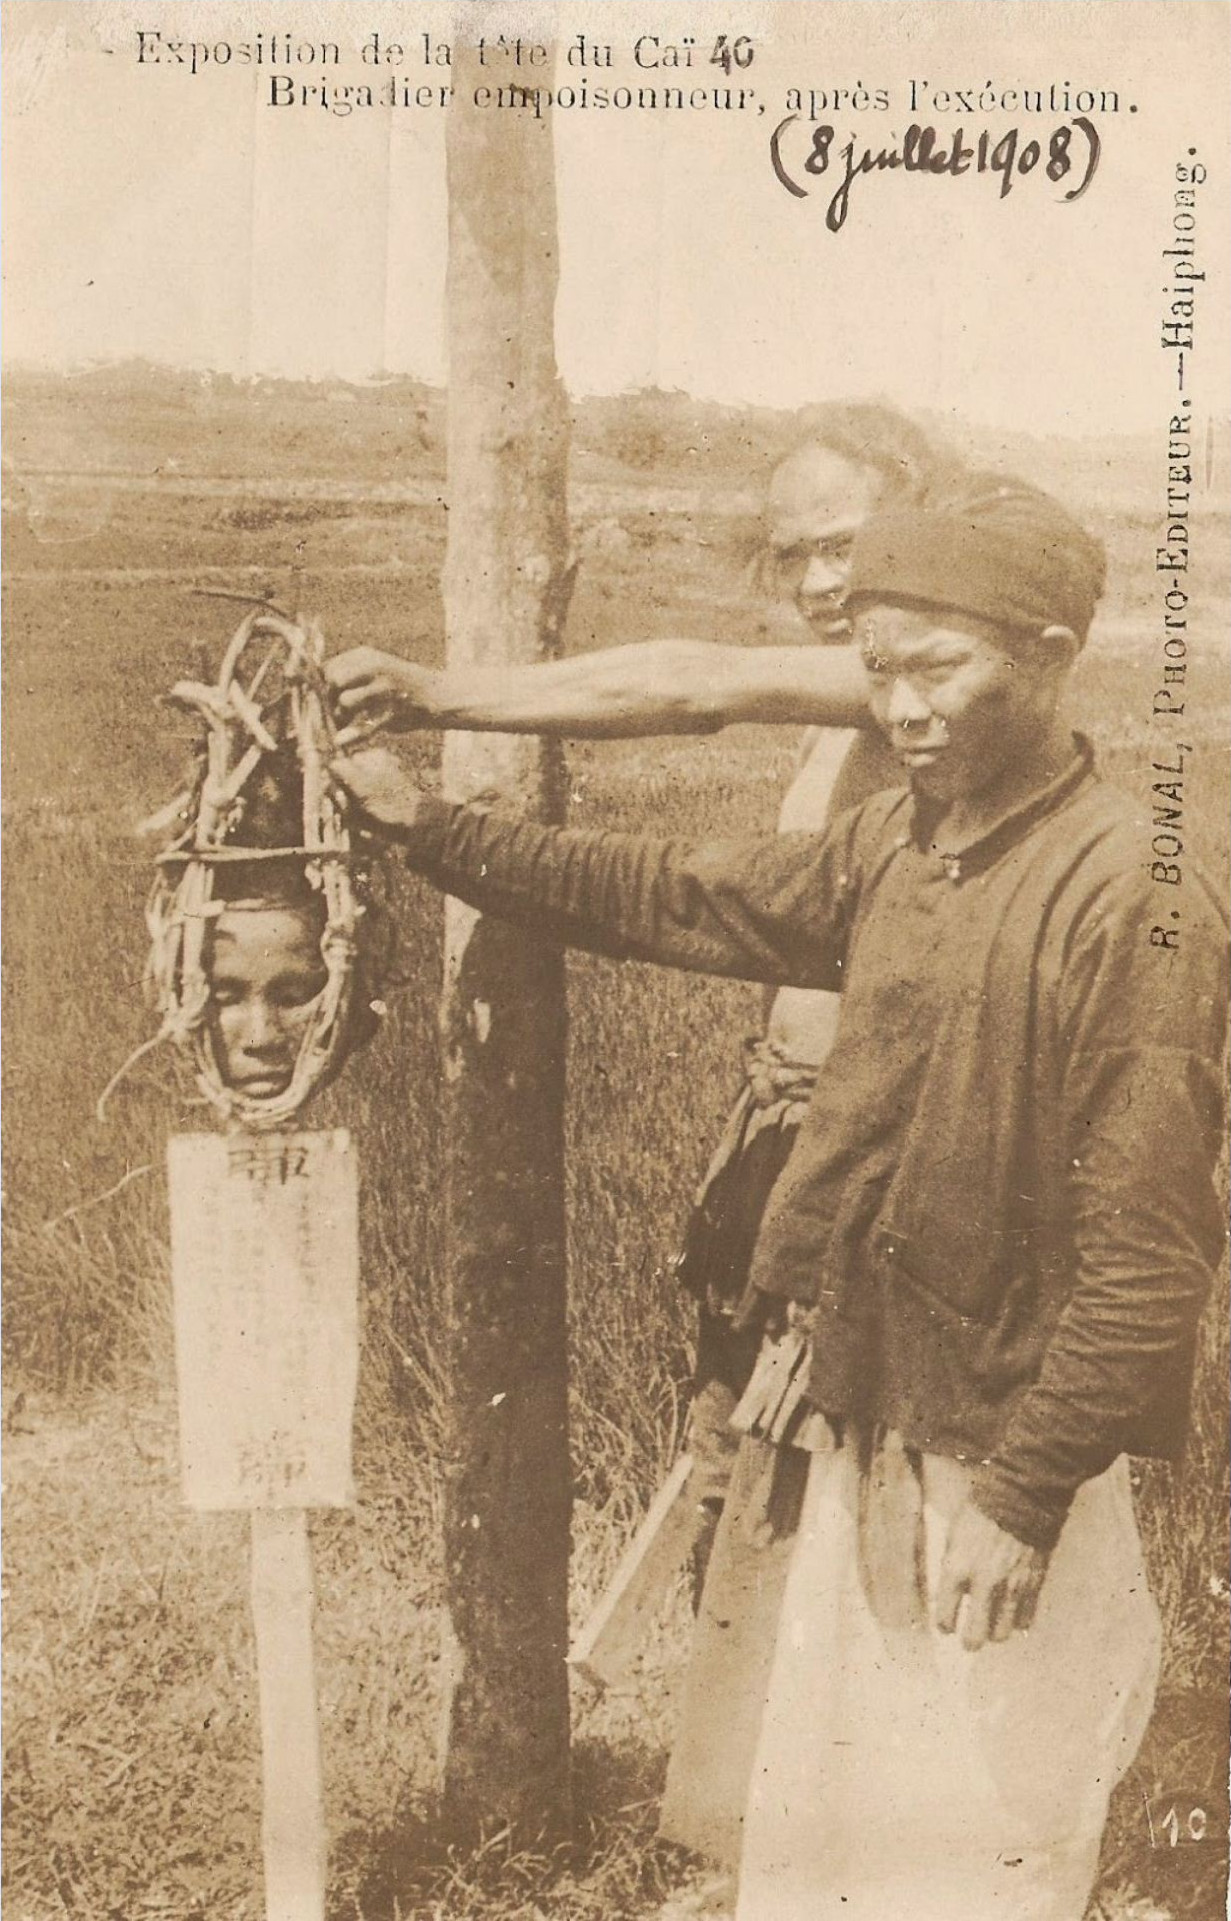    Exposition de la tête du Caï 40 (40/16)
               Brigadier empoisonneur, après l'exécution.
                                  (8 juillet 1908)